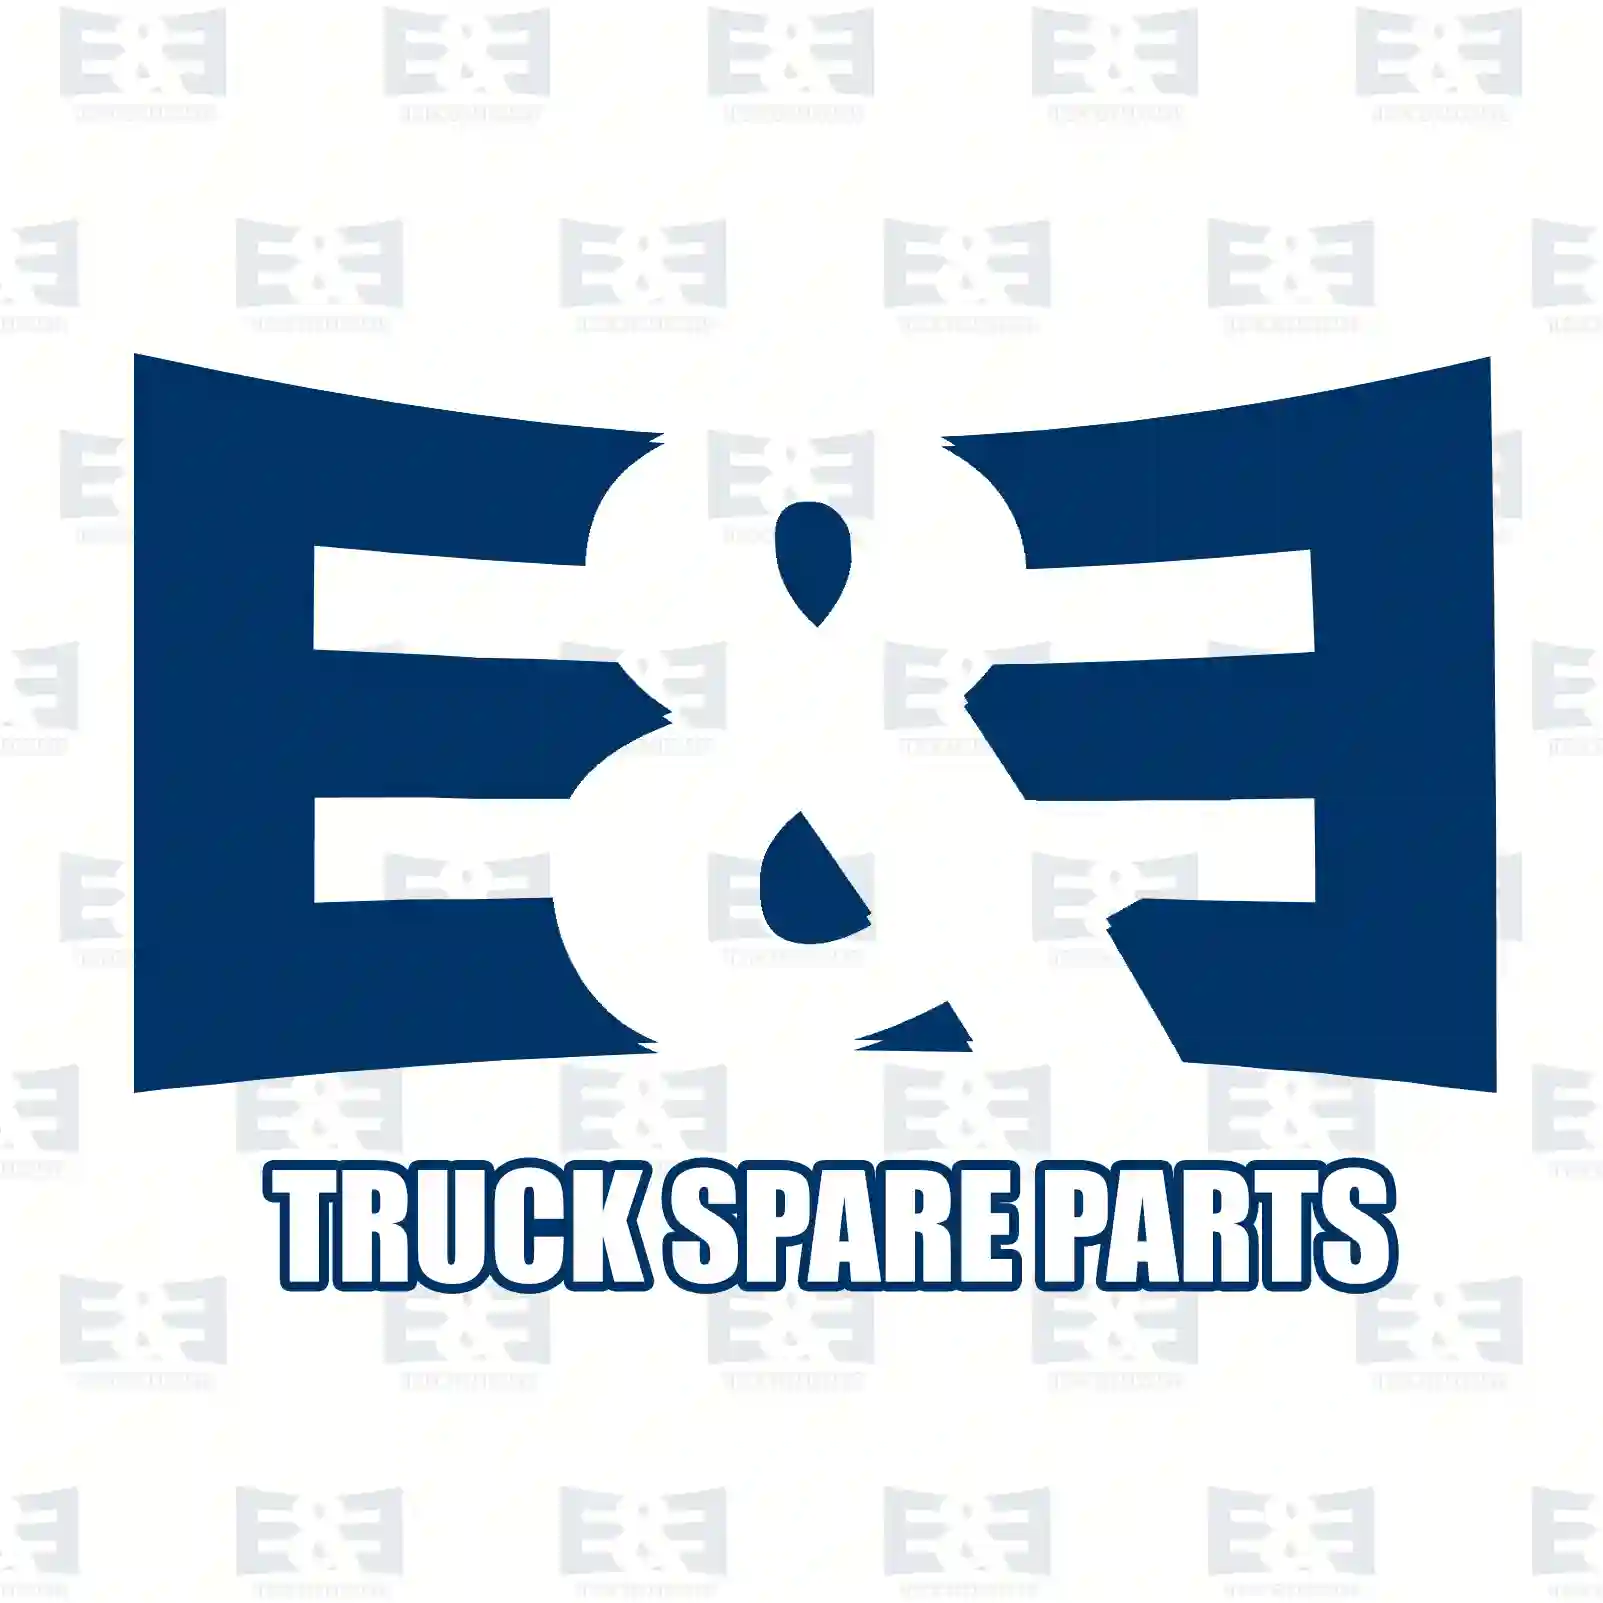 Pulley, with screws, 2E2207181, 504017415S, 504078435S, 504017415S, 504078435S, ||  2E2207181 E&E Truck Spare Parts | Truck Spare Parts, Auotomotive Spare Parts Pulley, with screws, 2E2207181, 504017415S, 504078435S, 504017415S, 504078435S, ||  2E2207181 E&E Truck Spare Parts | Truck Spare Parts, Auotomotive Spare Parts